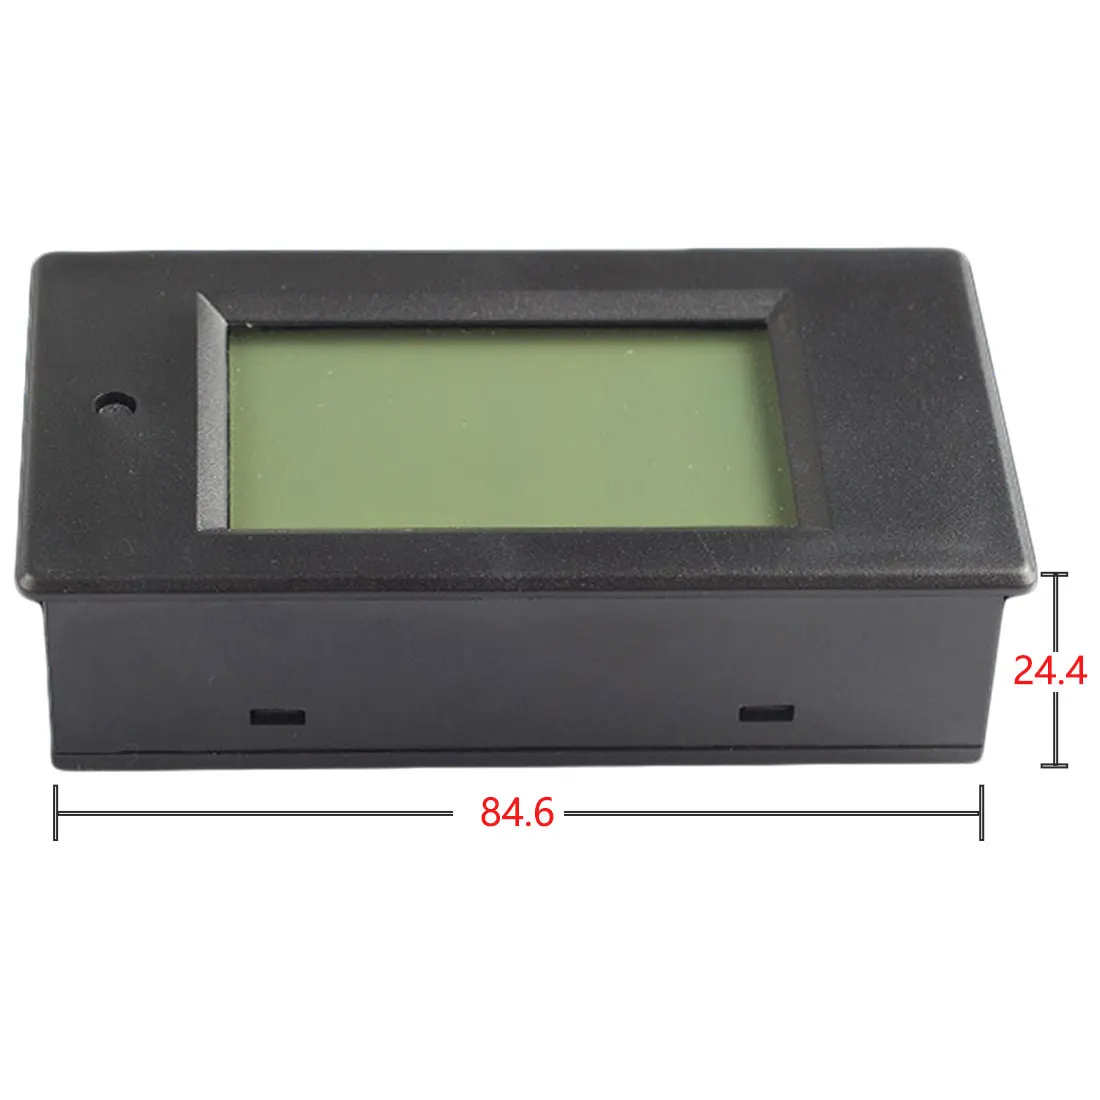 DC LCD Combo Meter KWH Watt Plošči Merilnik Digitalni Prikaz Napetost, Trenutna Moč Poraba Električne Energije Merilnik Baterije Tester 5